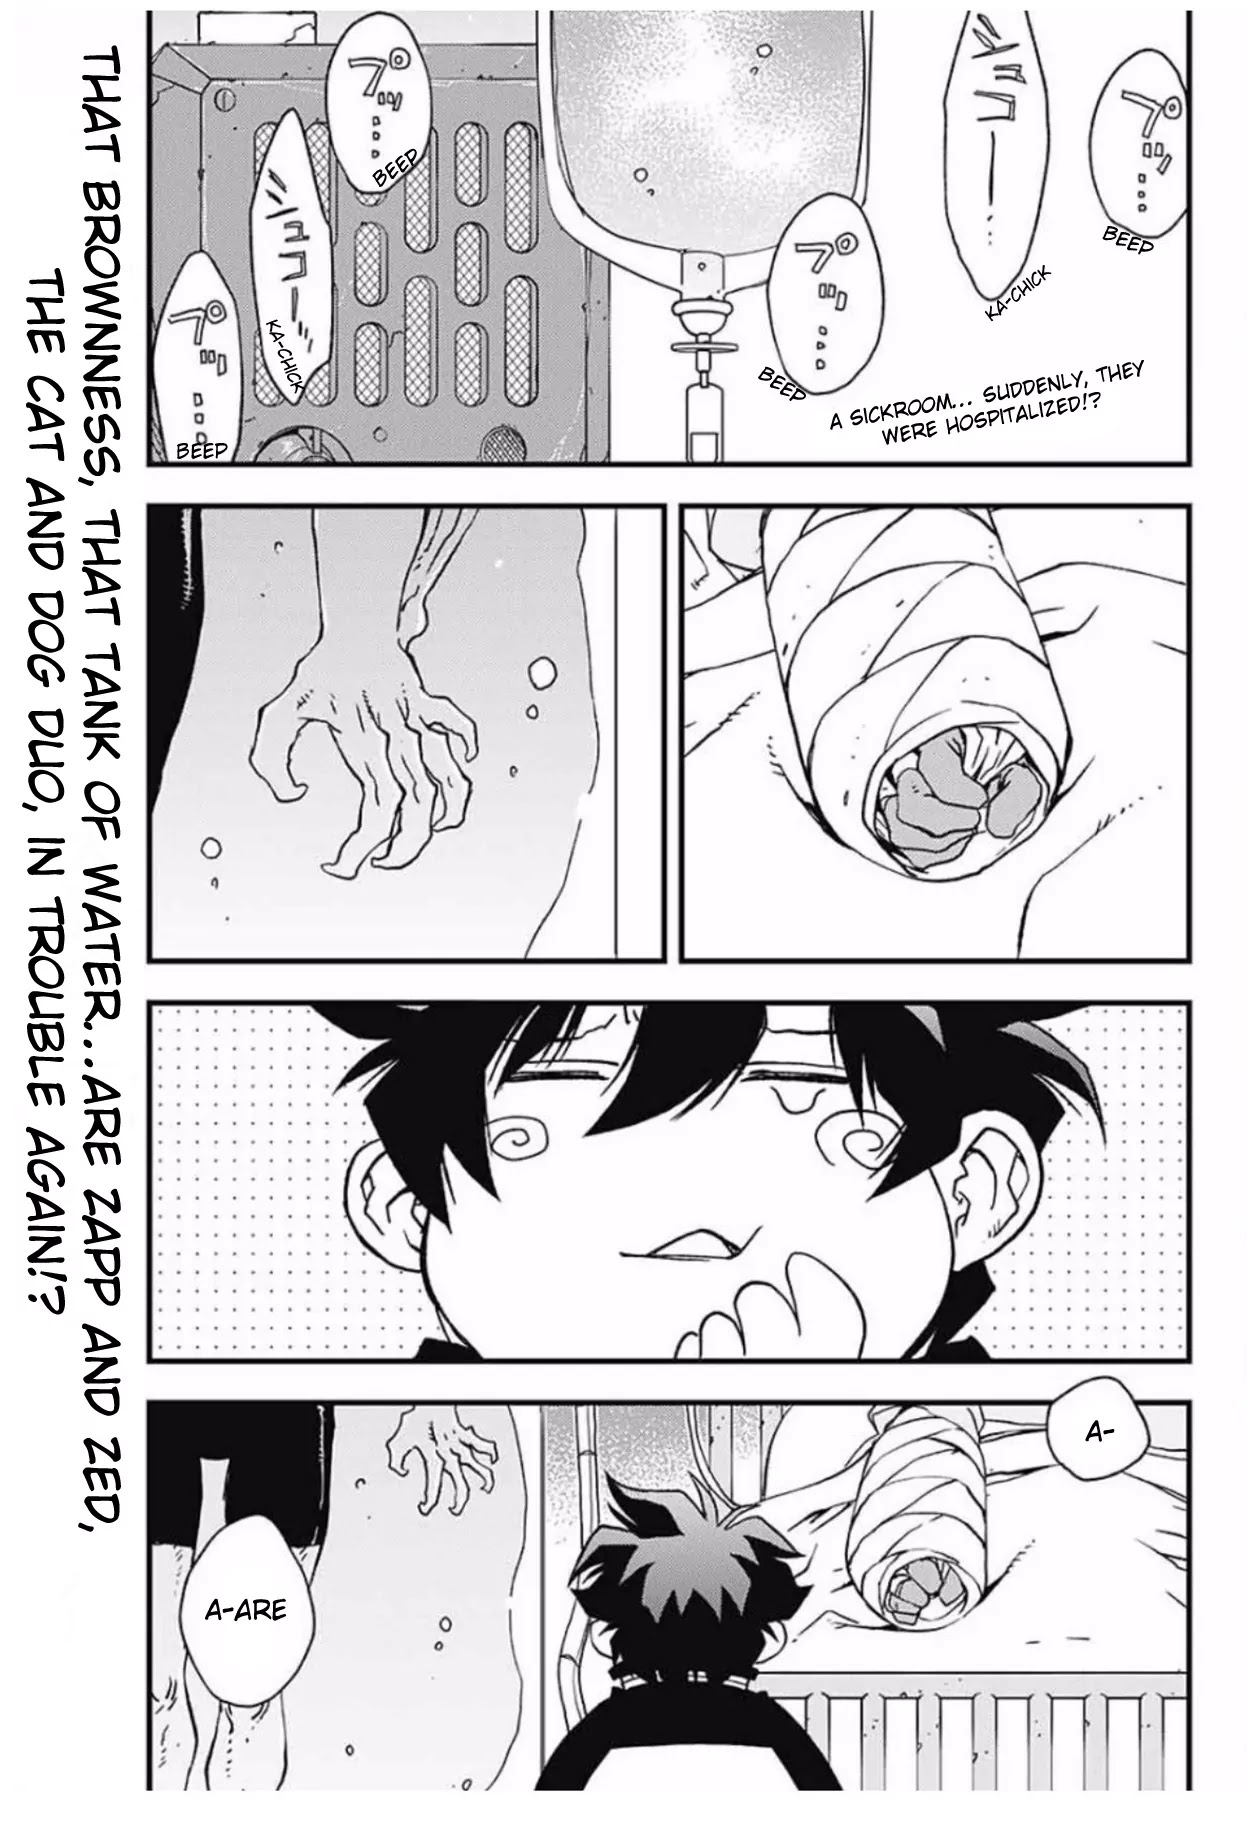 Kekkai Sensen - Back 2 Back - Page 3